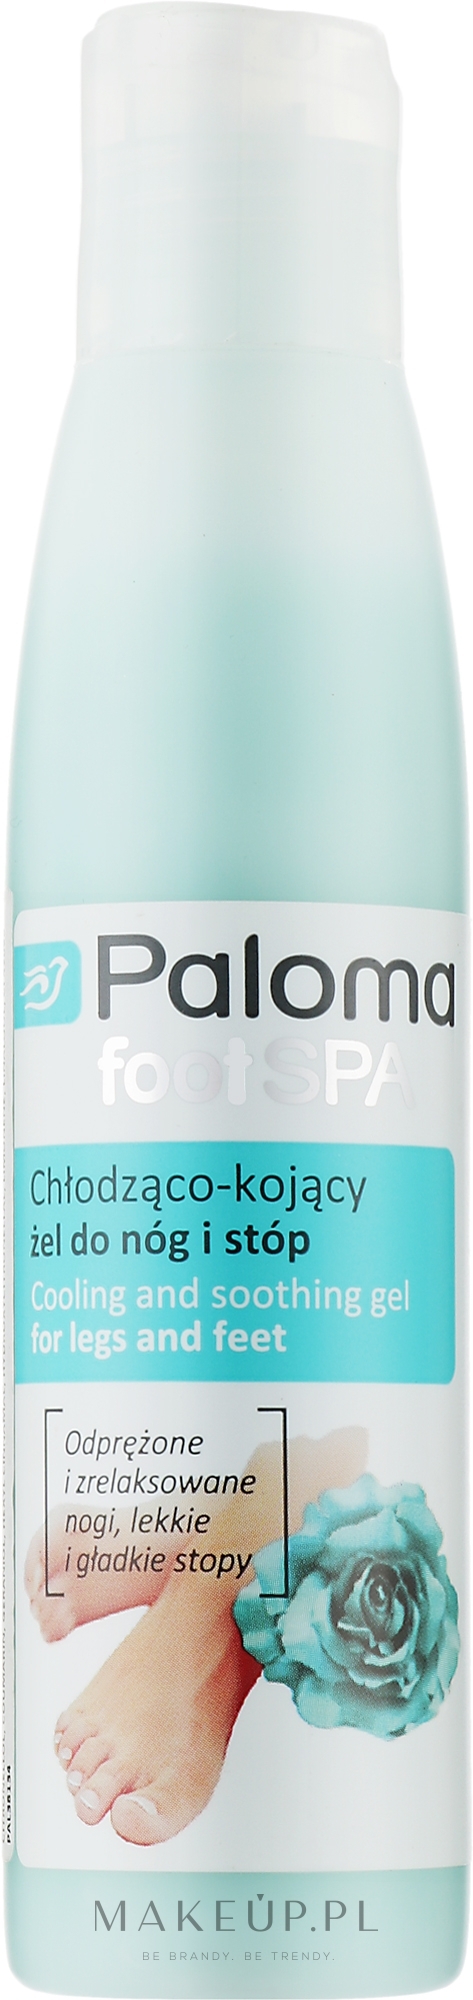 Chłodząco-kojący żel do nóg i stóp - Paloma Foot SPA — Zdjęcie 125 ml